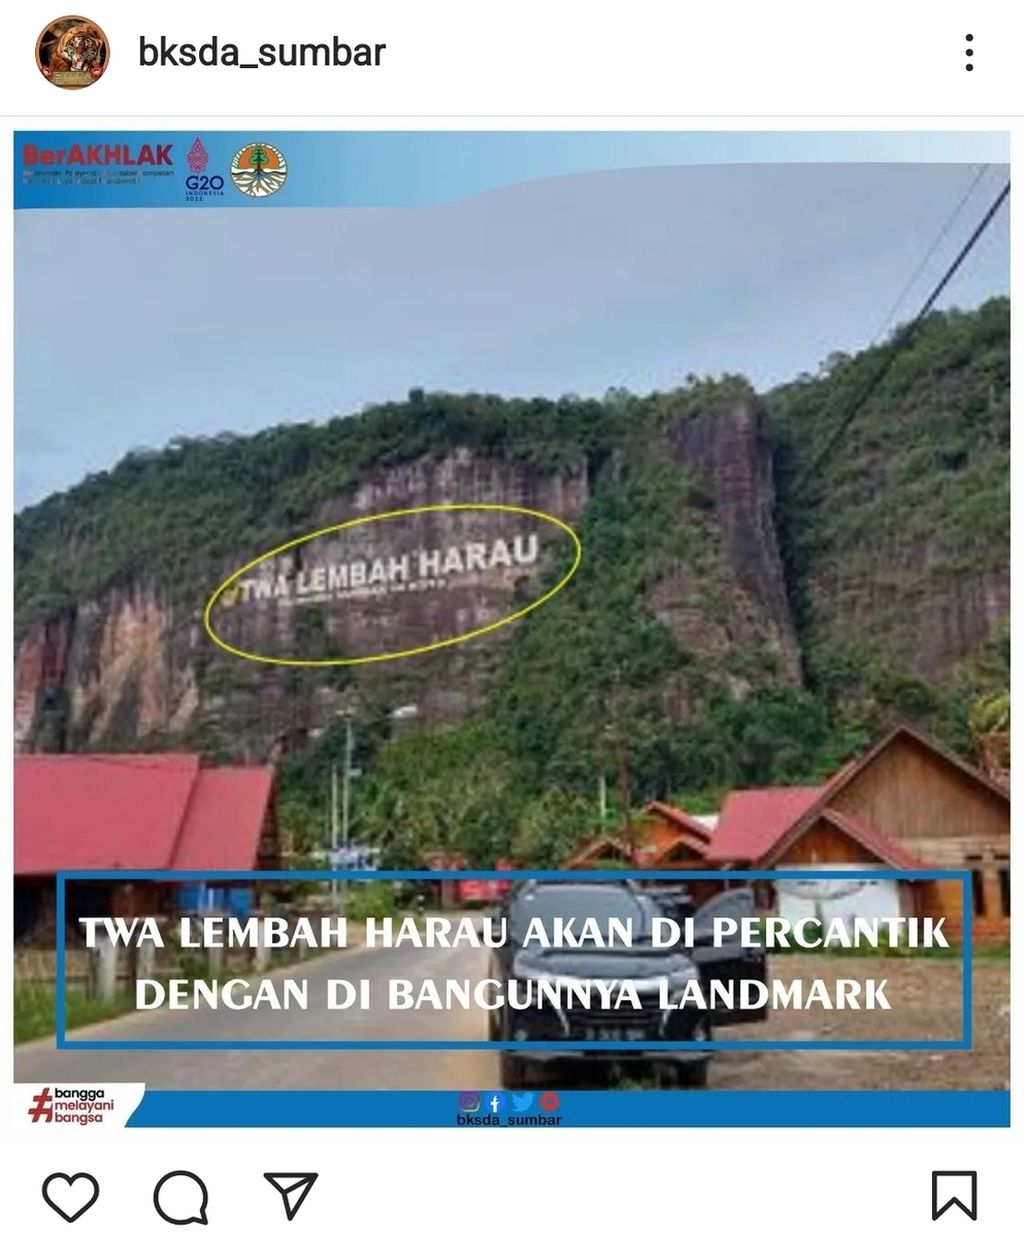 Tangkapan layar unggahan akun Instagram @bksda_sumbar tentang desain <i>landmark</i> di tebing Geopark Lembah Harau yang akan dibangun BKSDA Sumatera Barat. Proyek ini ditargetkan sudah tuntas saat tahun baru 2023.